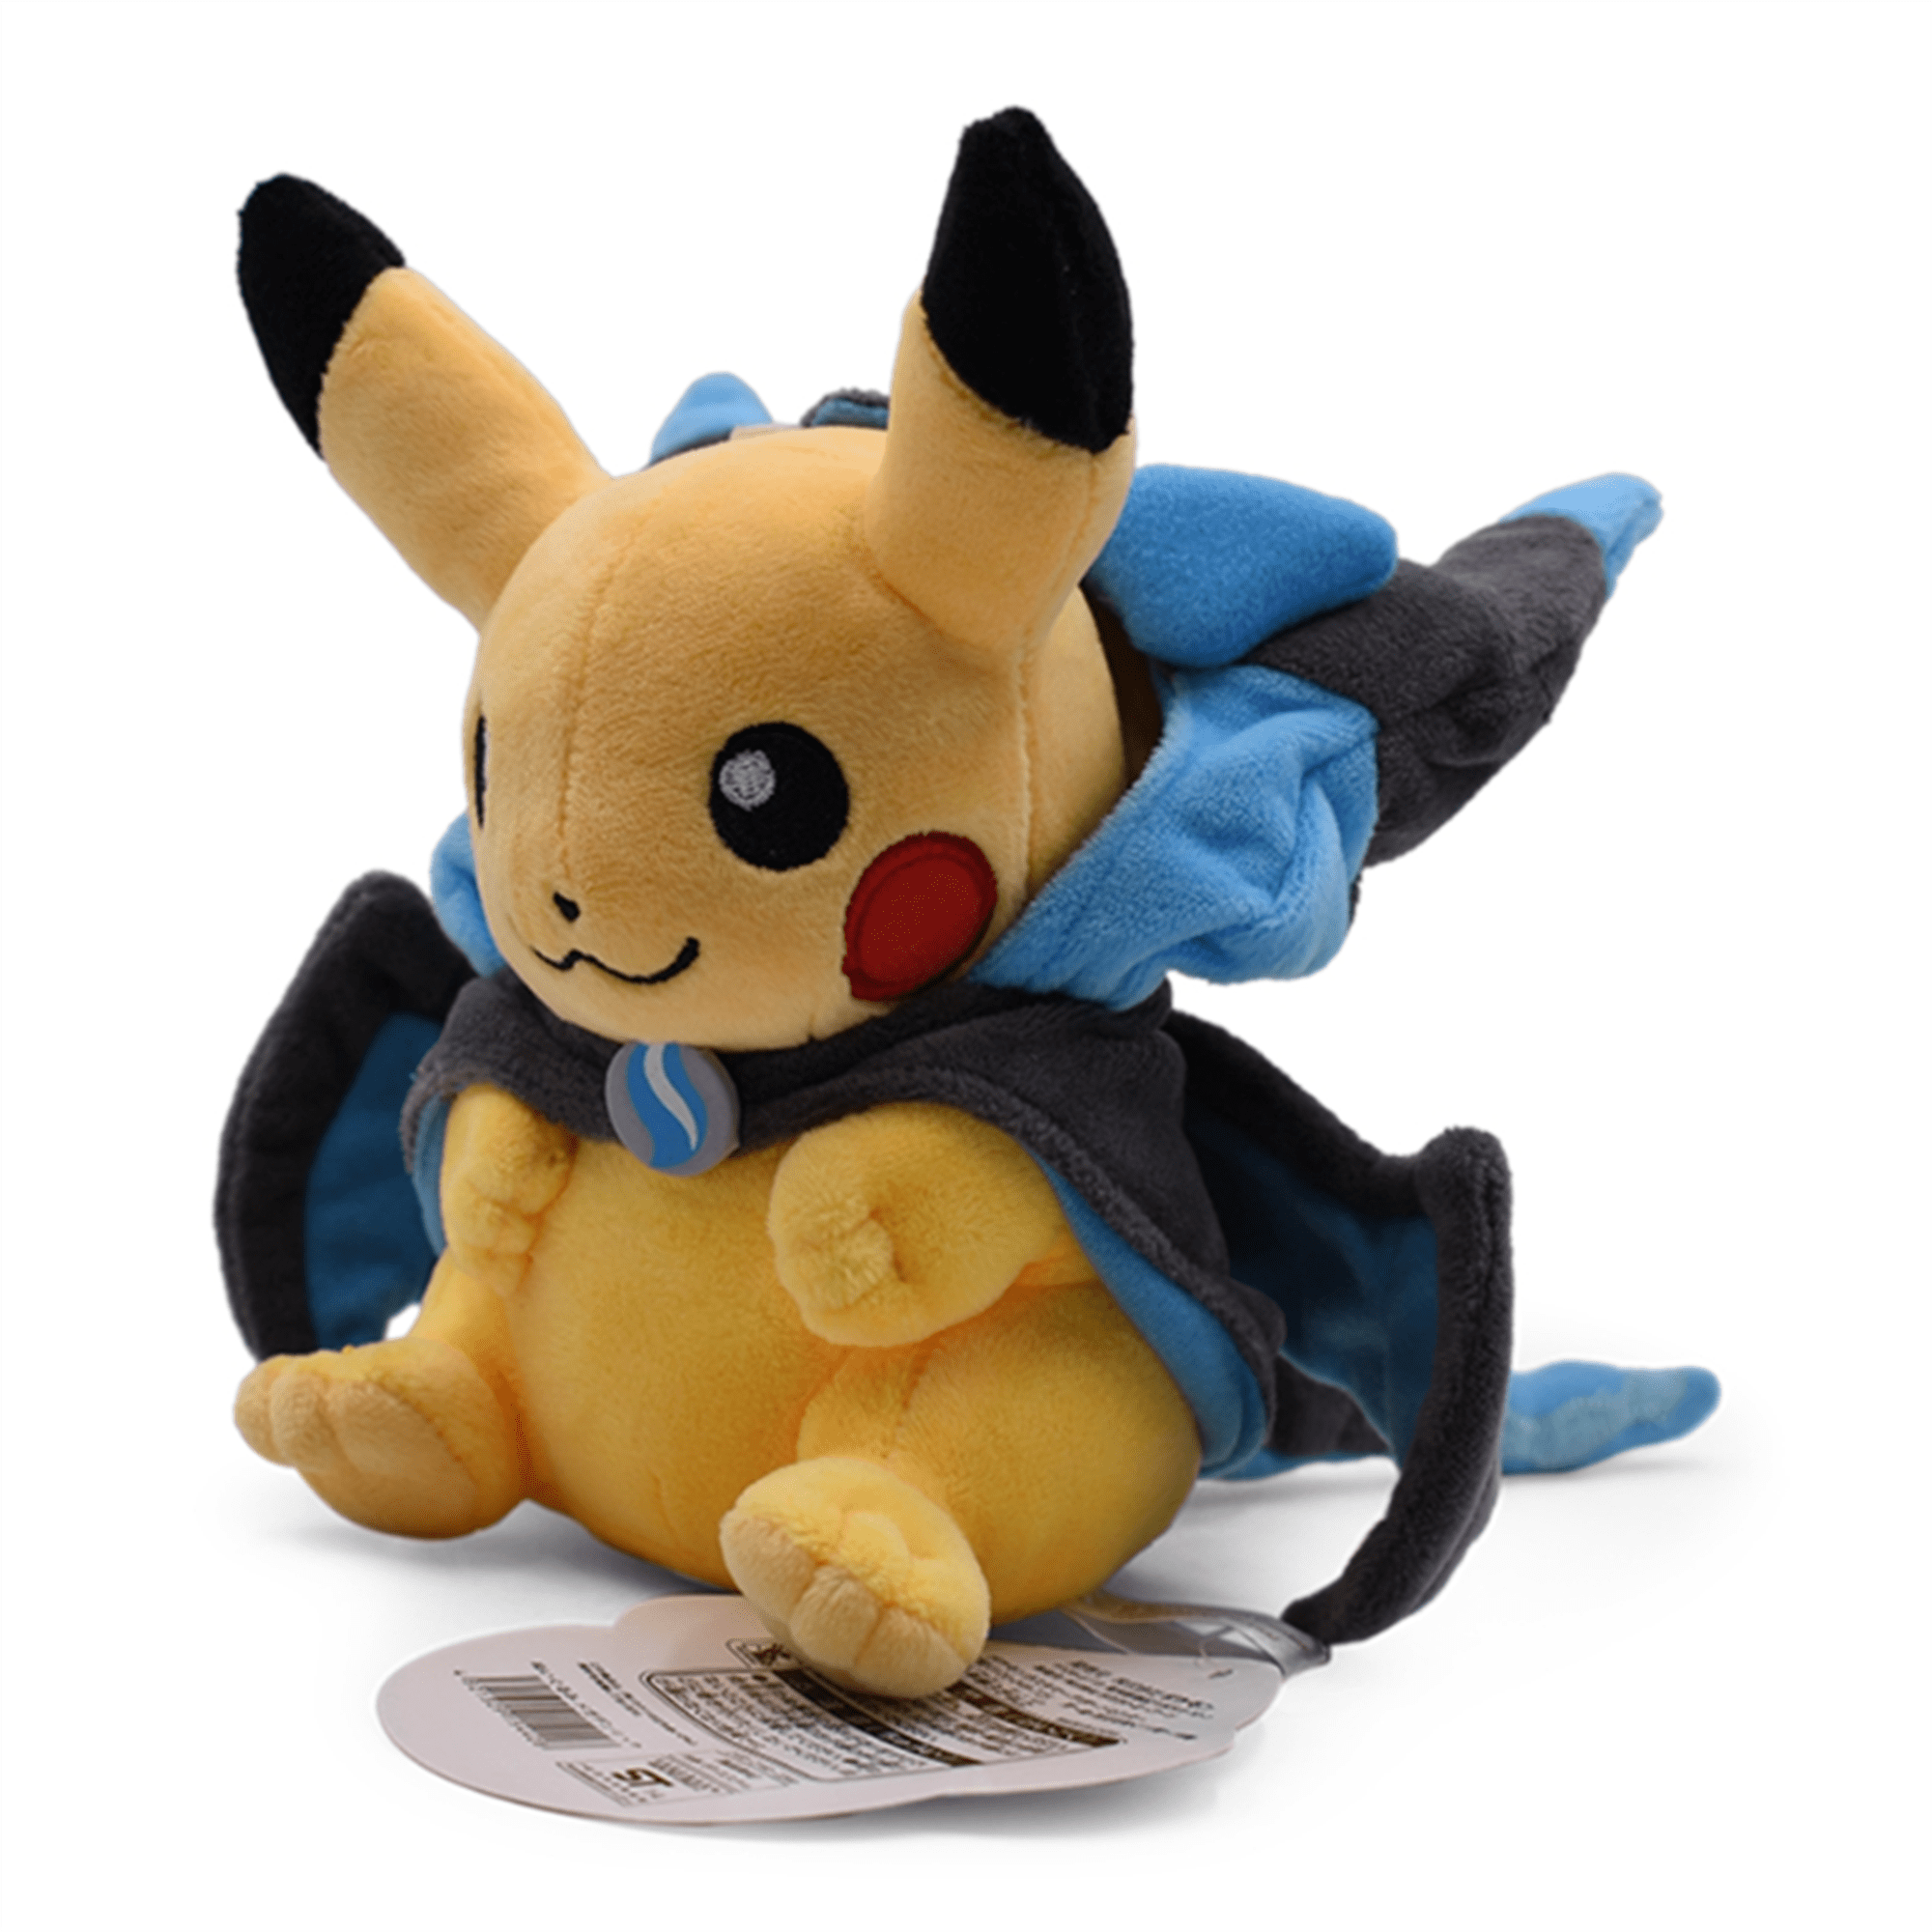 Pokemon Pikachu Cosplay Charizard 9" Soft Plush Toy Stuffed Animal Plushie Cute 